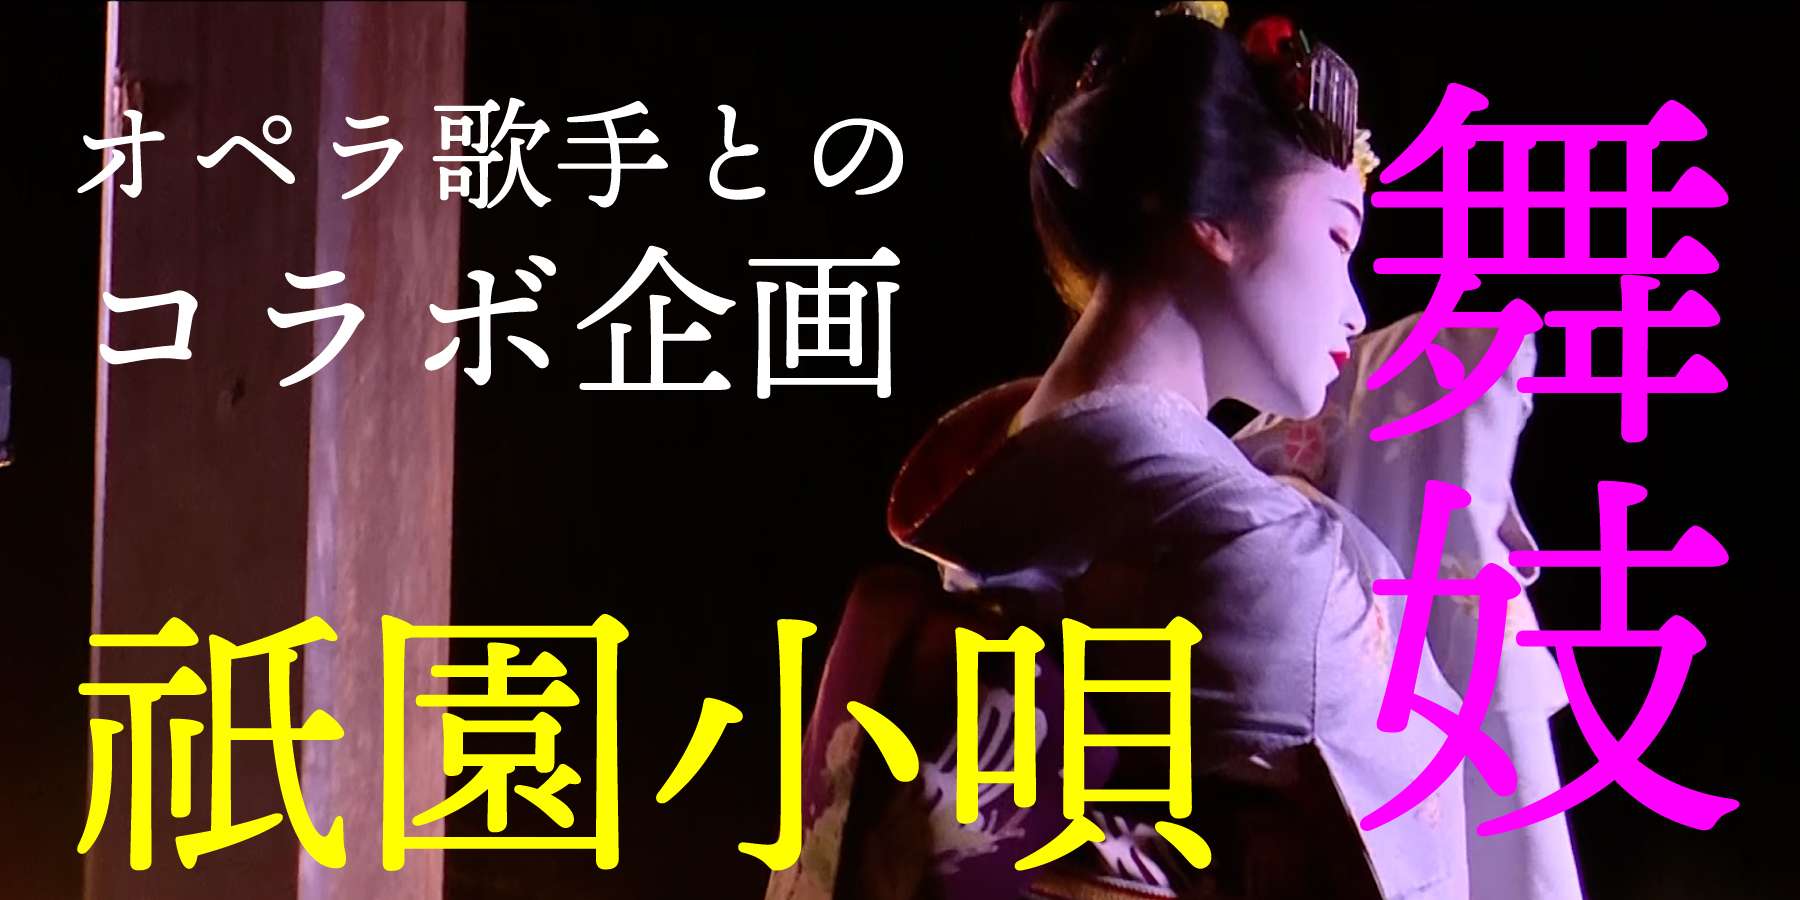 【魅力的な京都スタイル・アトラクション】多様な編成で楽しむ「祇園小唄」の新しい演出